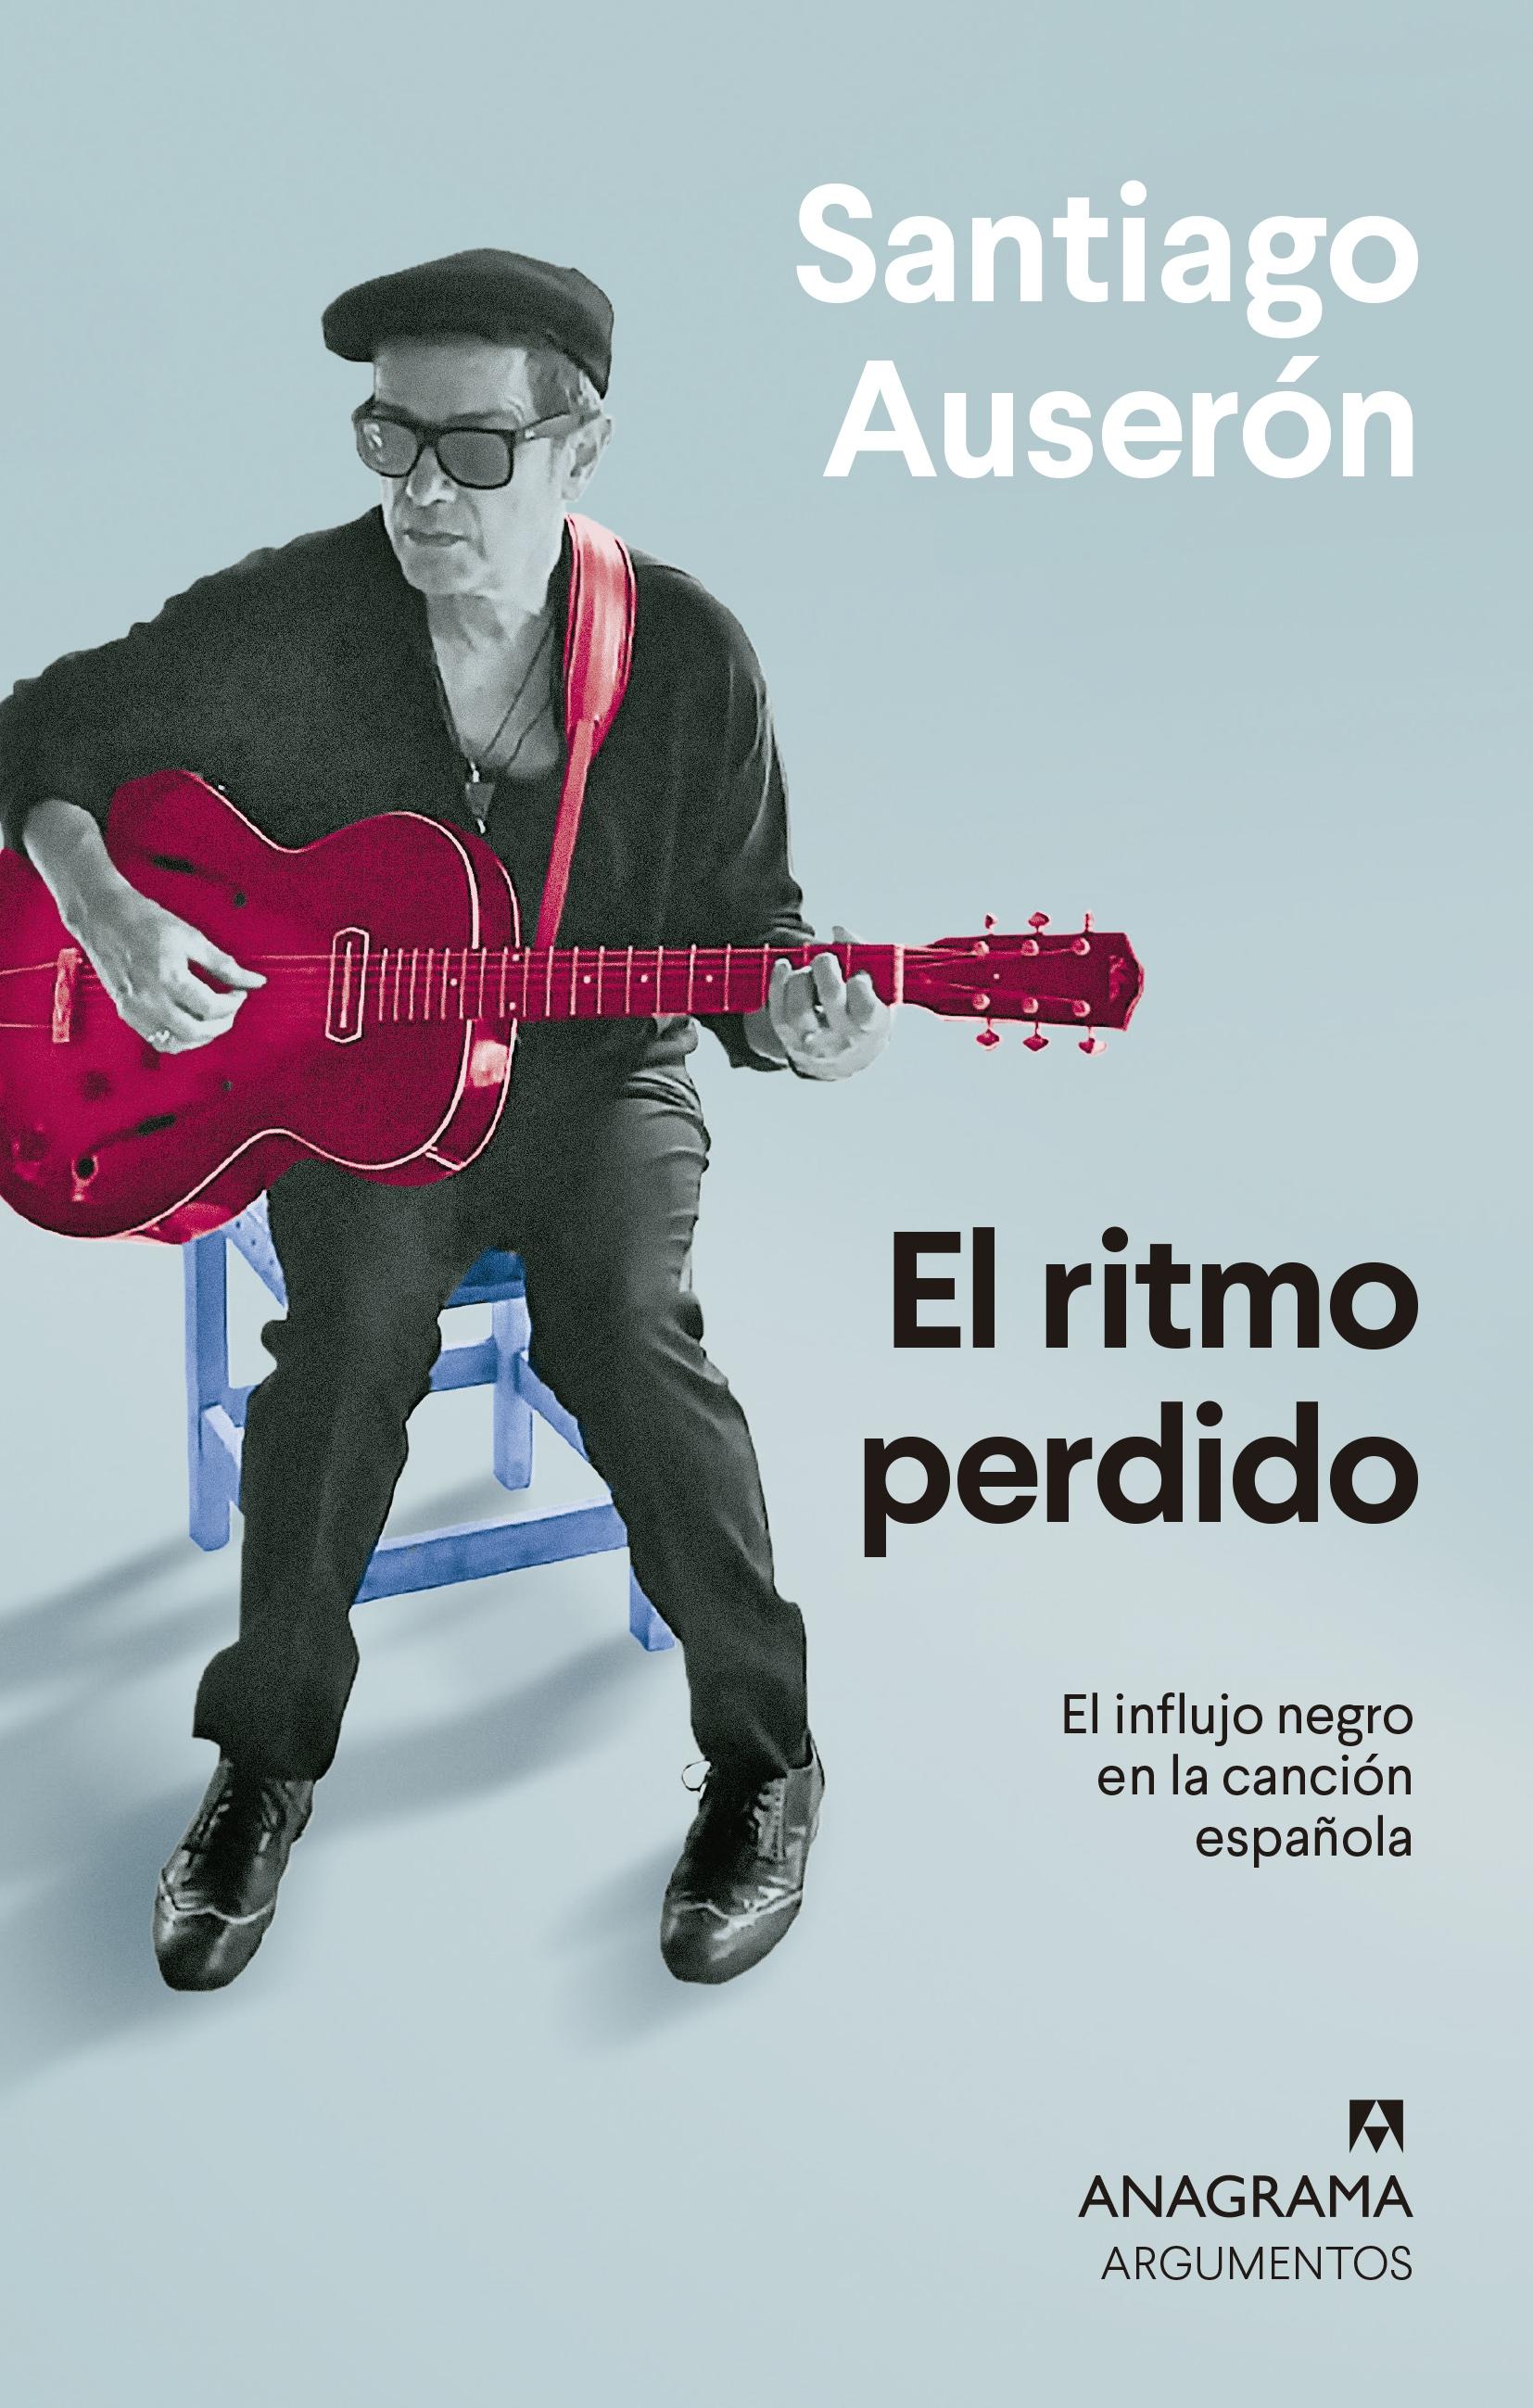 El ritmo perdido "El influjo negro en la canción española". 